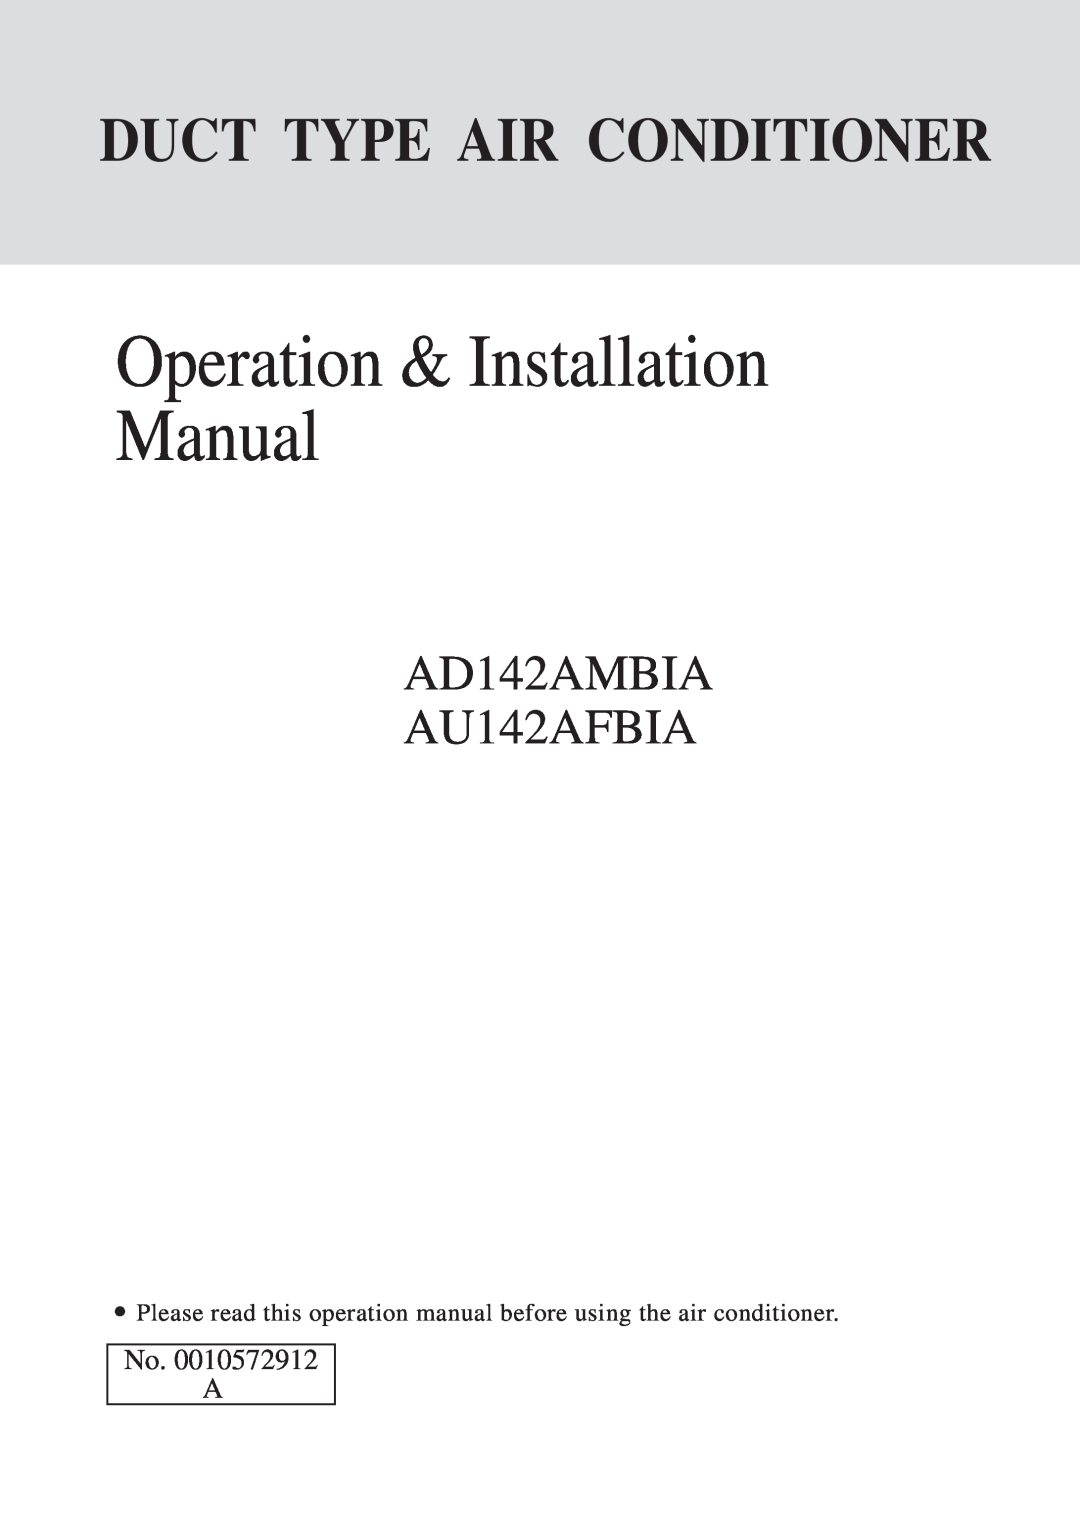 Haier installation manual AD142AMBIA AU142AFBIA, No. A, Operation & Installation Manual, Duct Type Air Conditioner 